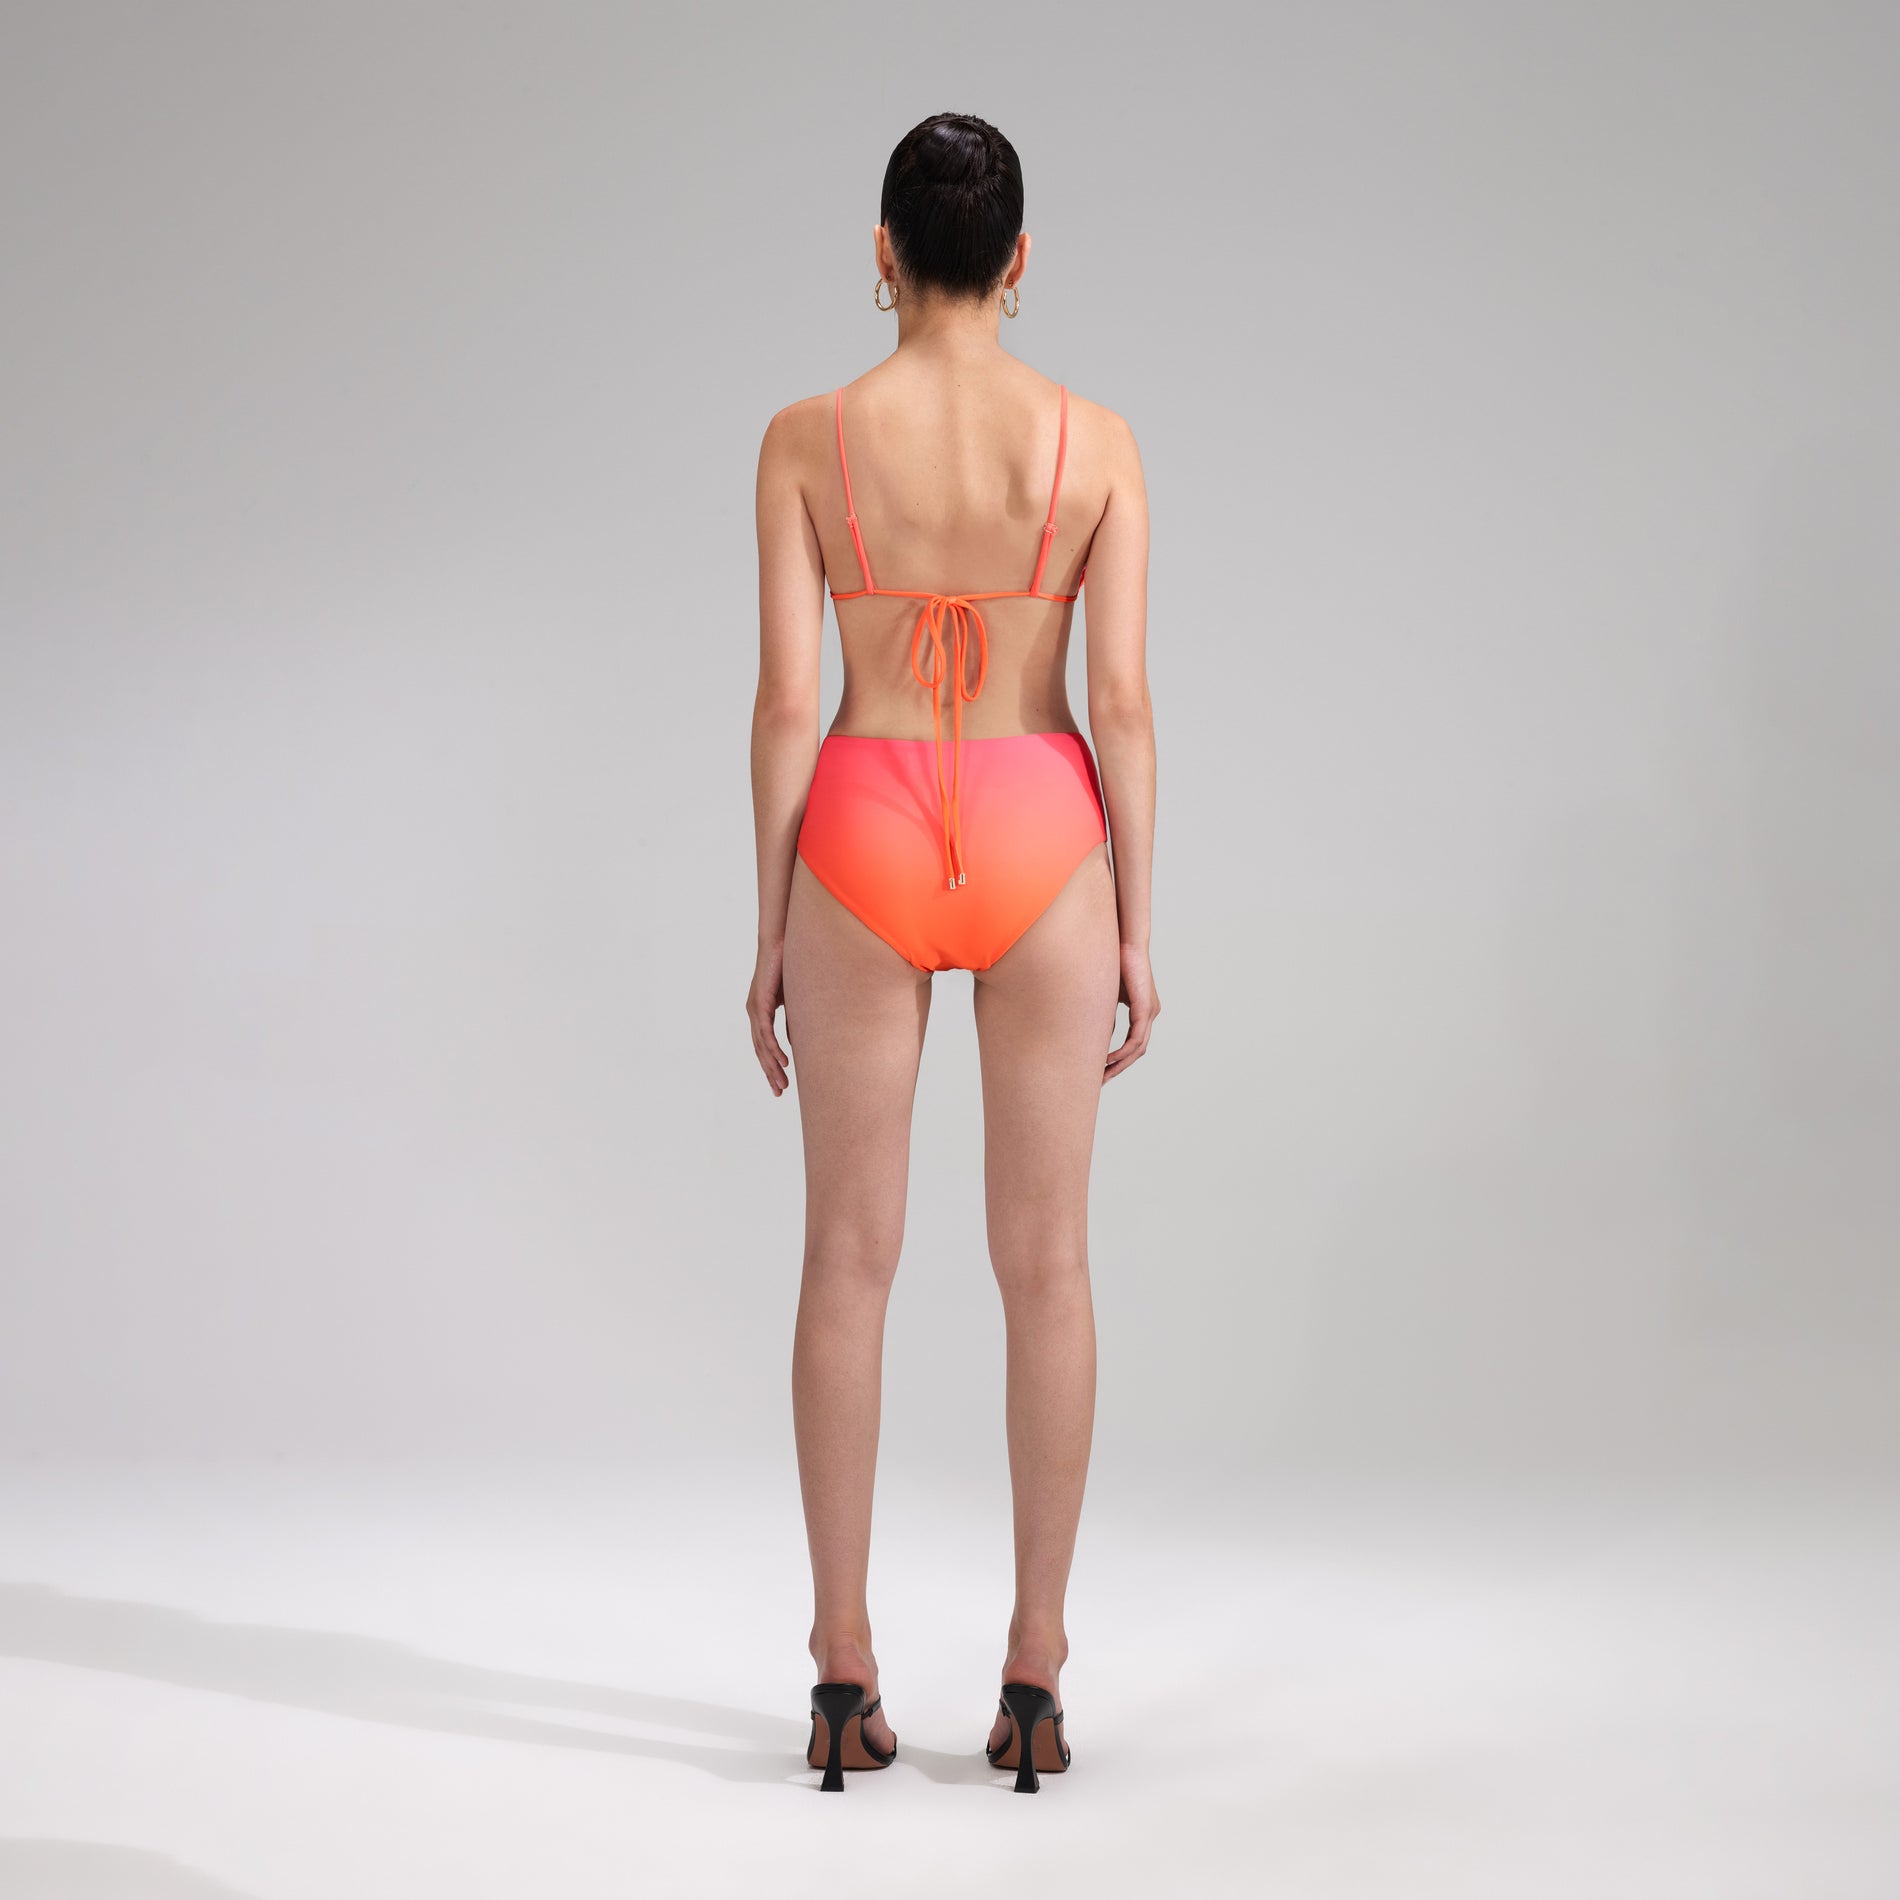 A woman wearing the Orange Bikini Brief